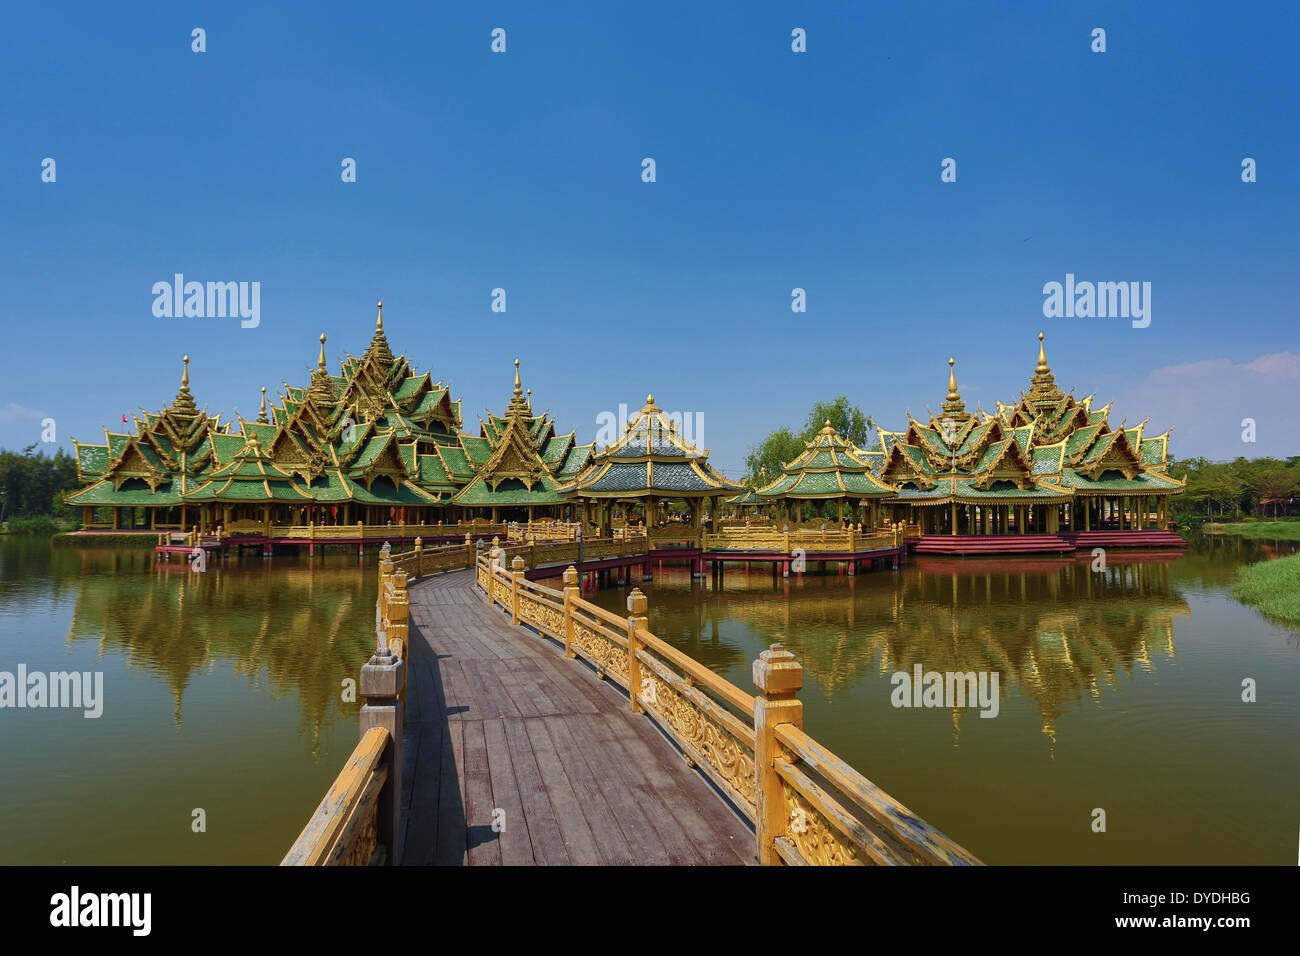 Thailand Asien Bangkok Ancient Siam Park Architektur Brücke bunte Kultur erleuchtet grünen Park Pavillon Reflexion tou Stockfoto